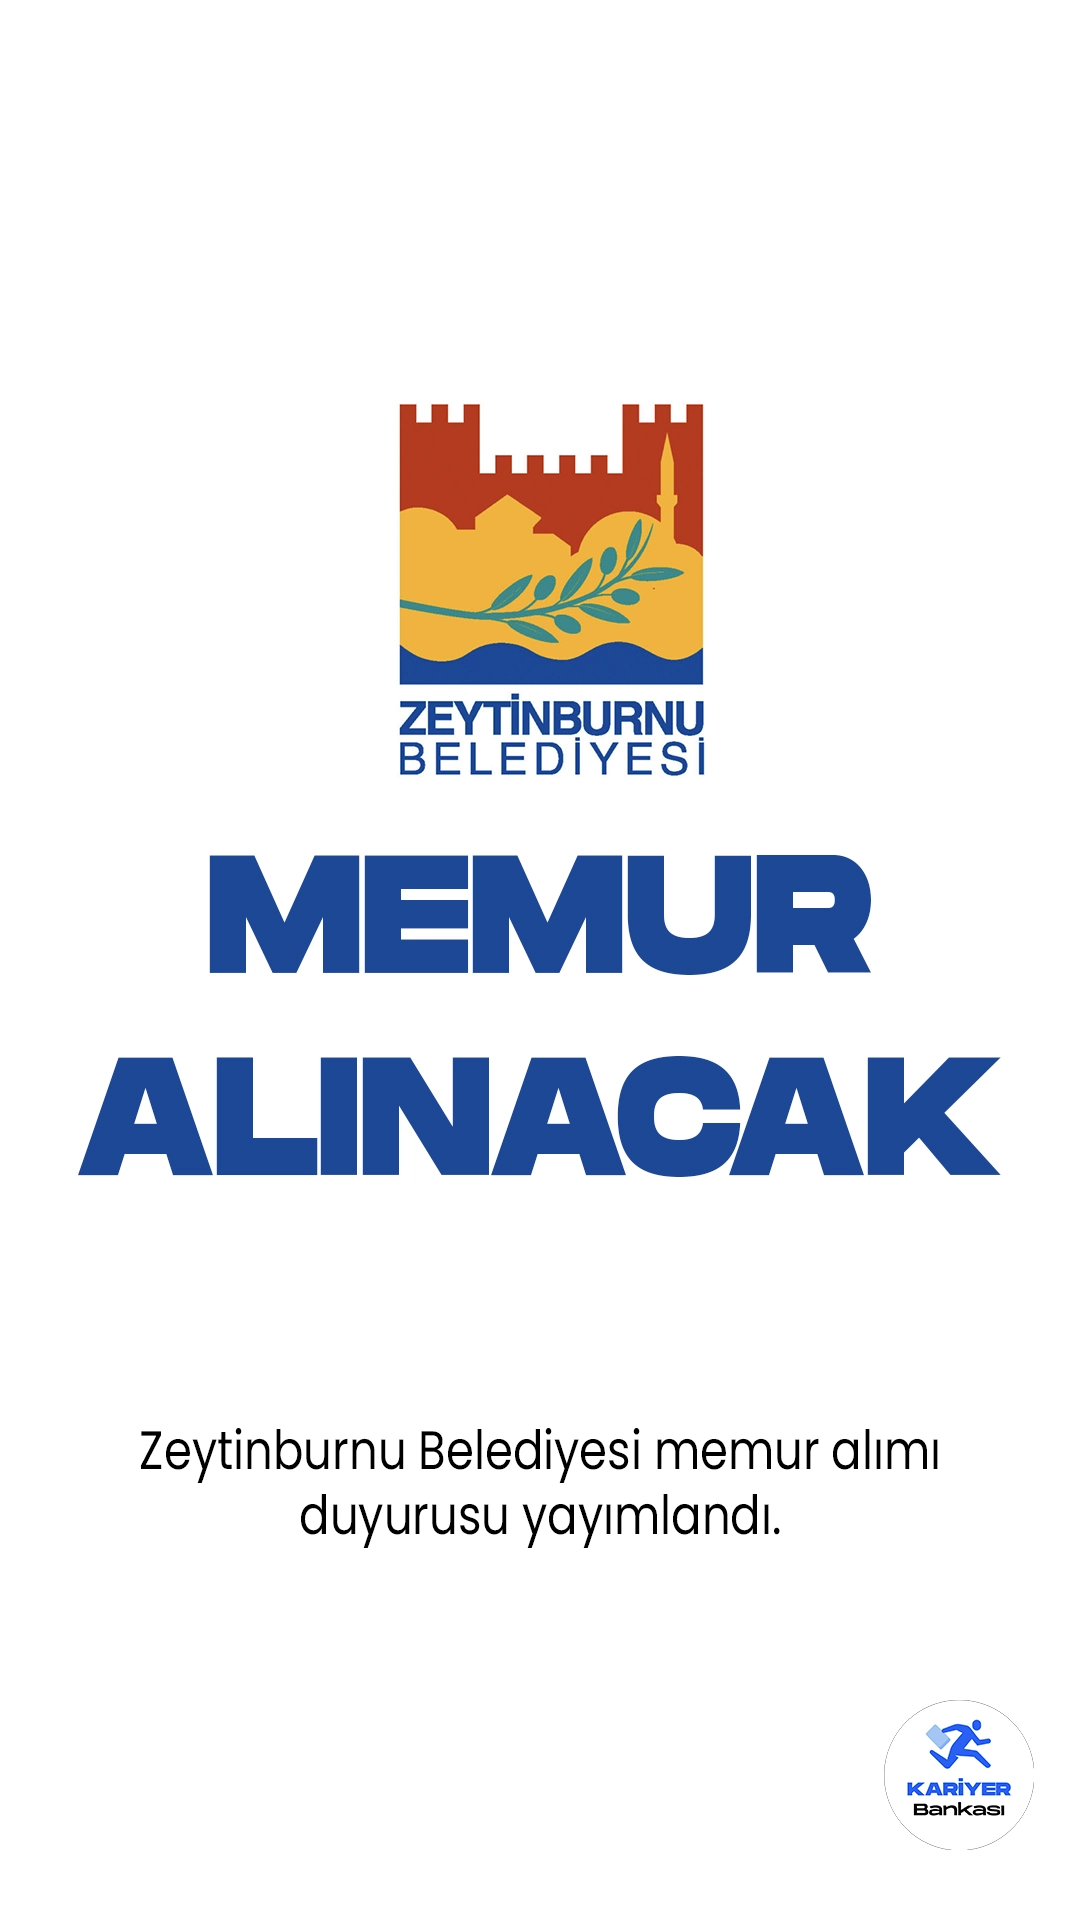 Zeytinburnu Belediyesi memur alımı duyurusu yayımlandı. Yayımlanan duyuruda, Zeytinburnu Belediyesine veznedar, tahsildar ve bilgisayar işletmeni unvanlarında memur alımı yapılacağı aktarıldı. Başvurular 11 Eylül'de başlayacak.